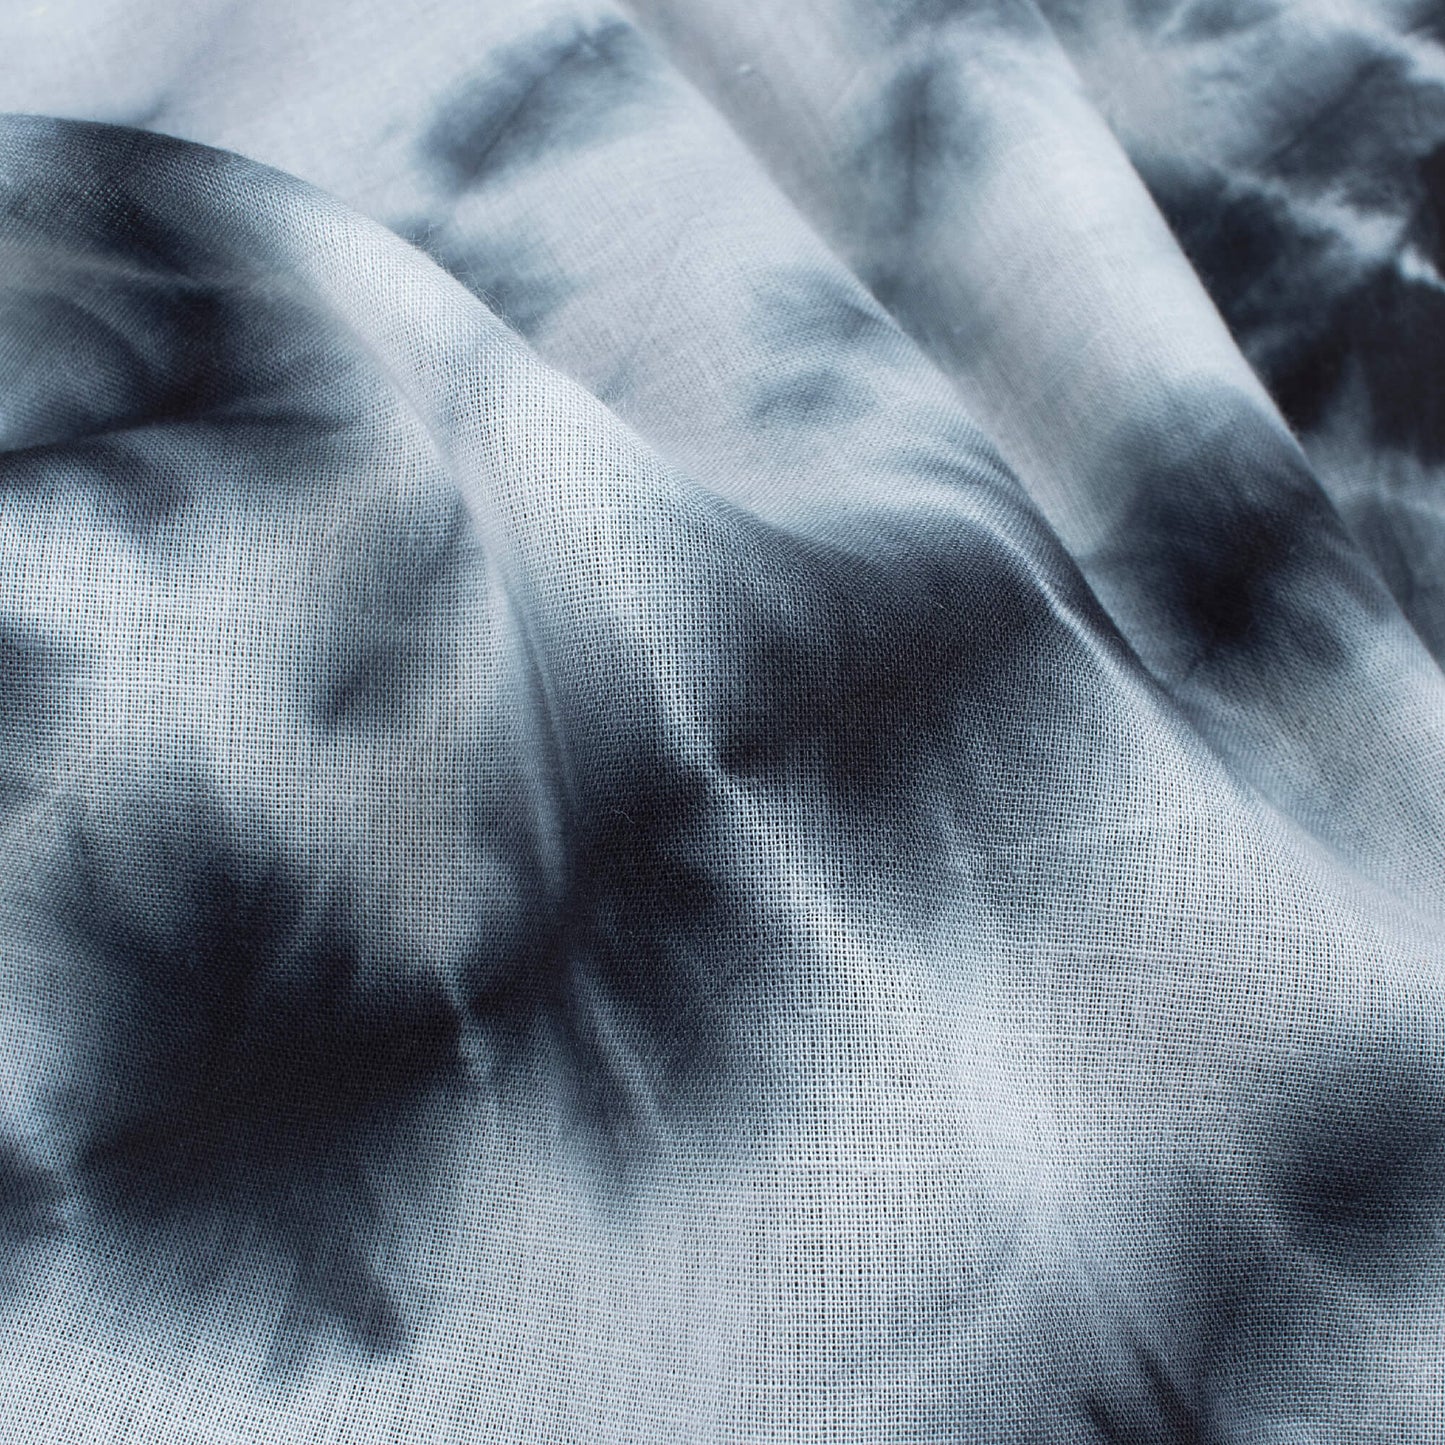 Black And White Shibori Hand Tie & Dye Cotton Mulmul Fabric